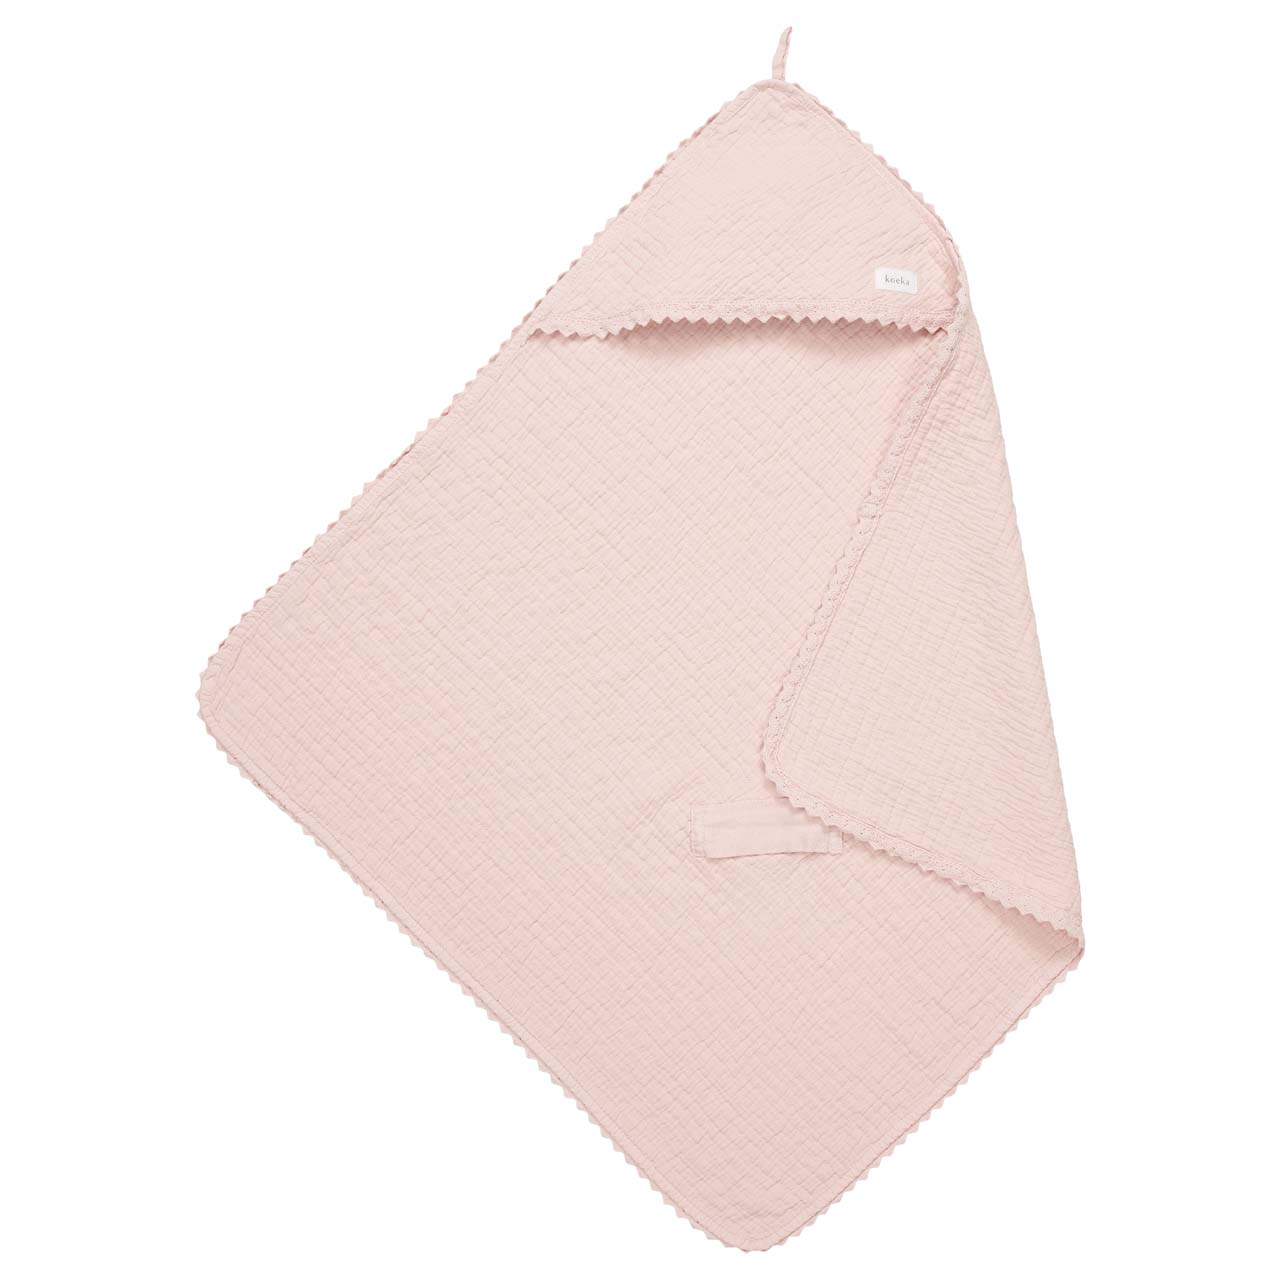 Wrap towel lace Elba blush